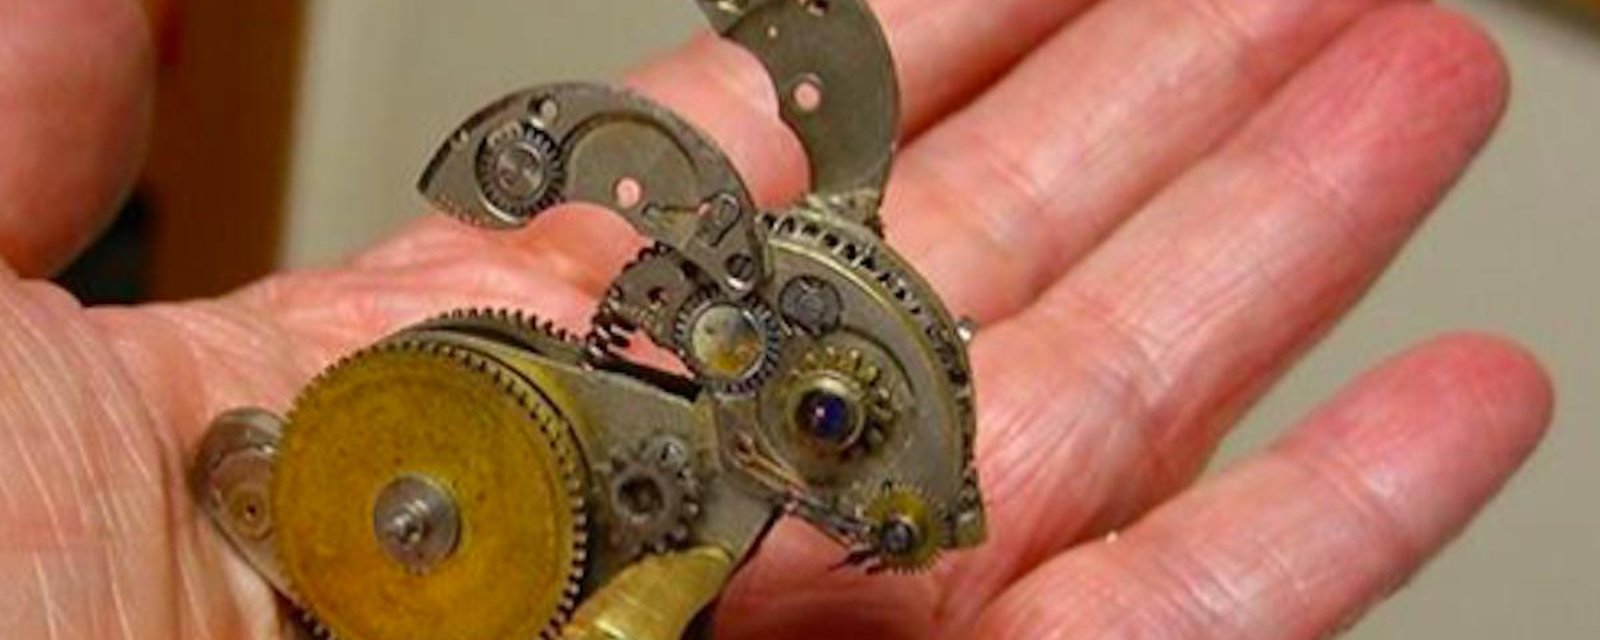 Elle récupère de vieux mécanismes de montres et réalise des objets spectaculaires!